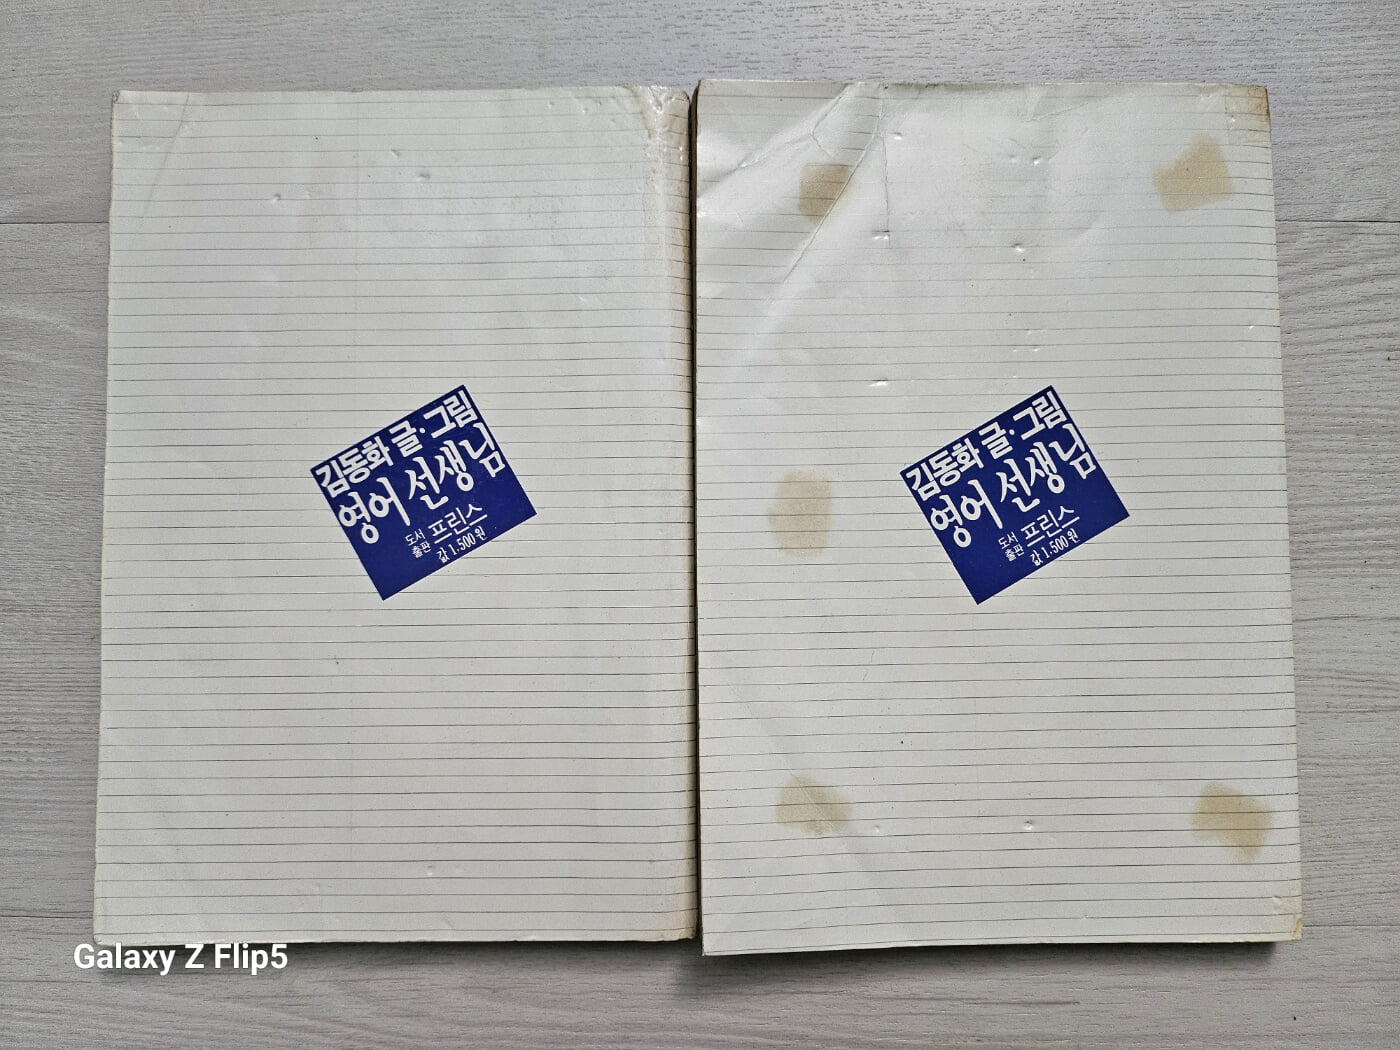 [희귀도서]김동화..영어선생님(전.후)/1987년 도서출판프린스/실사진